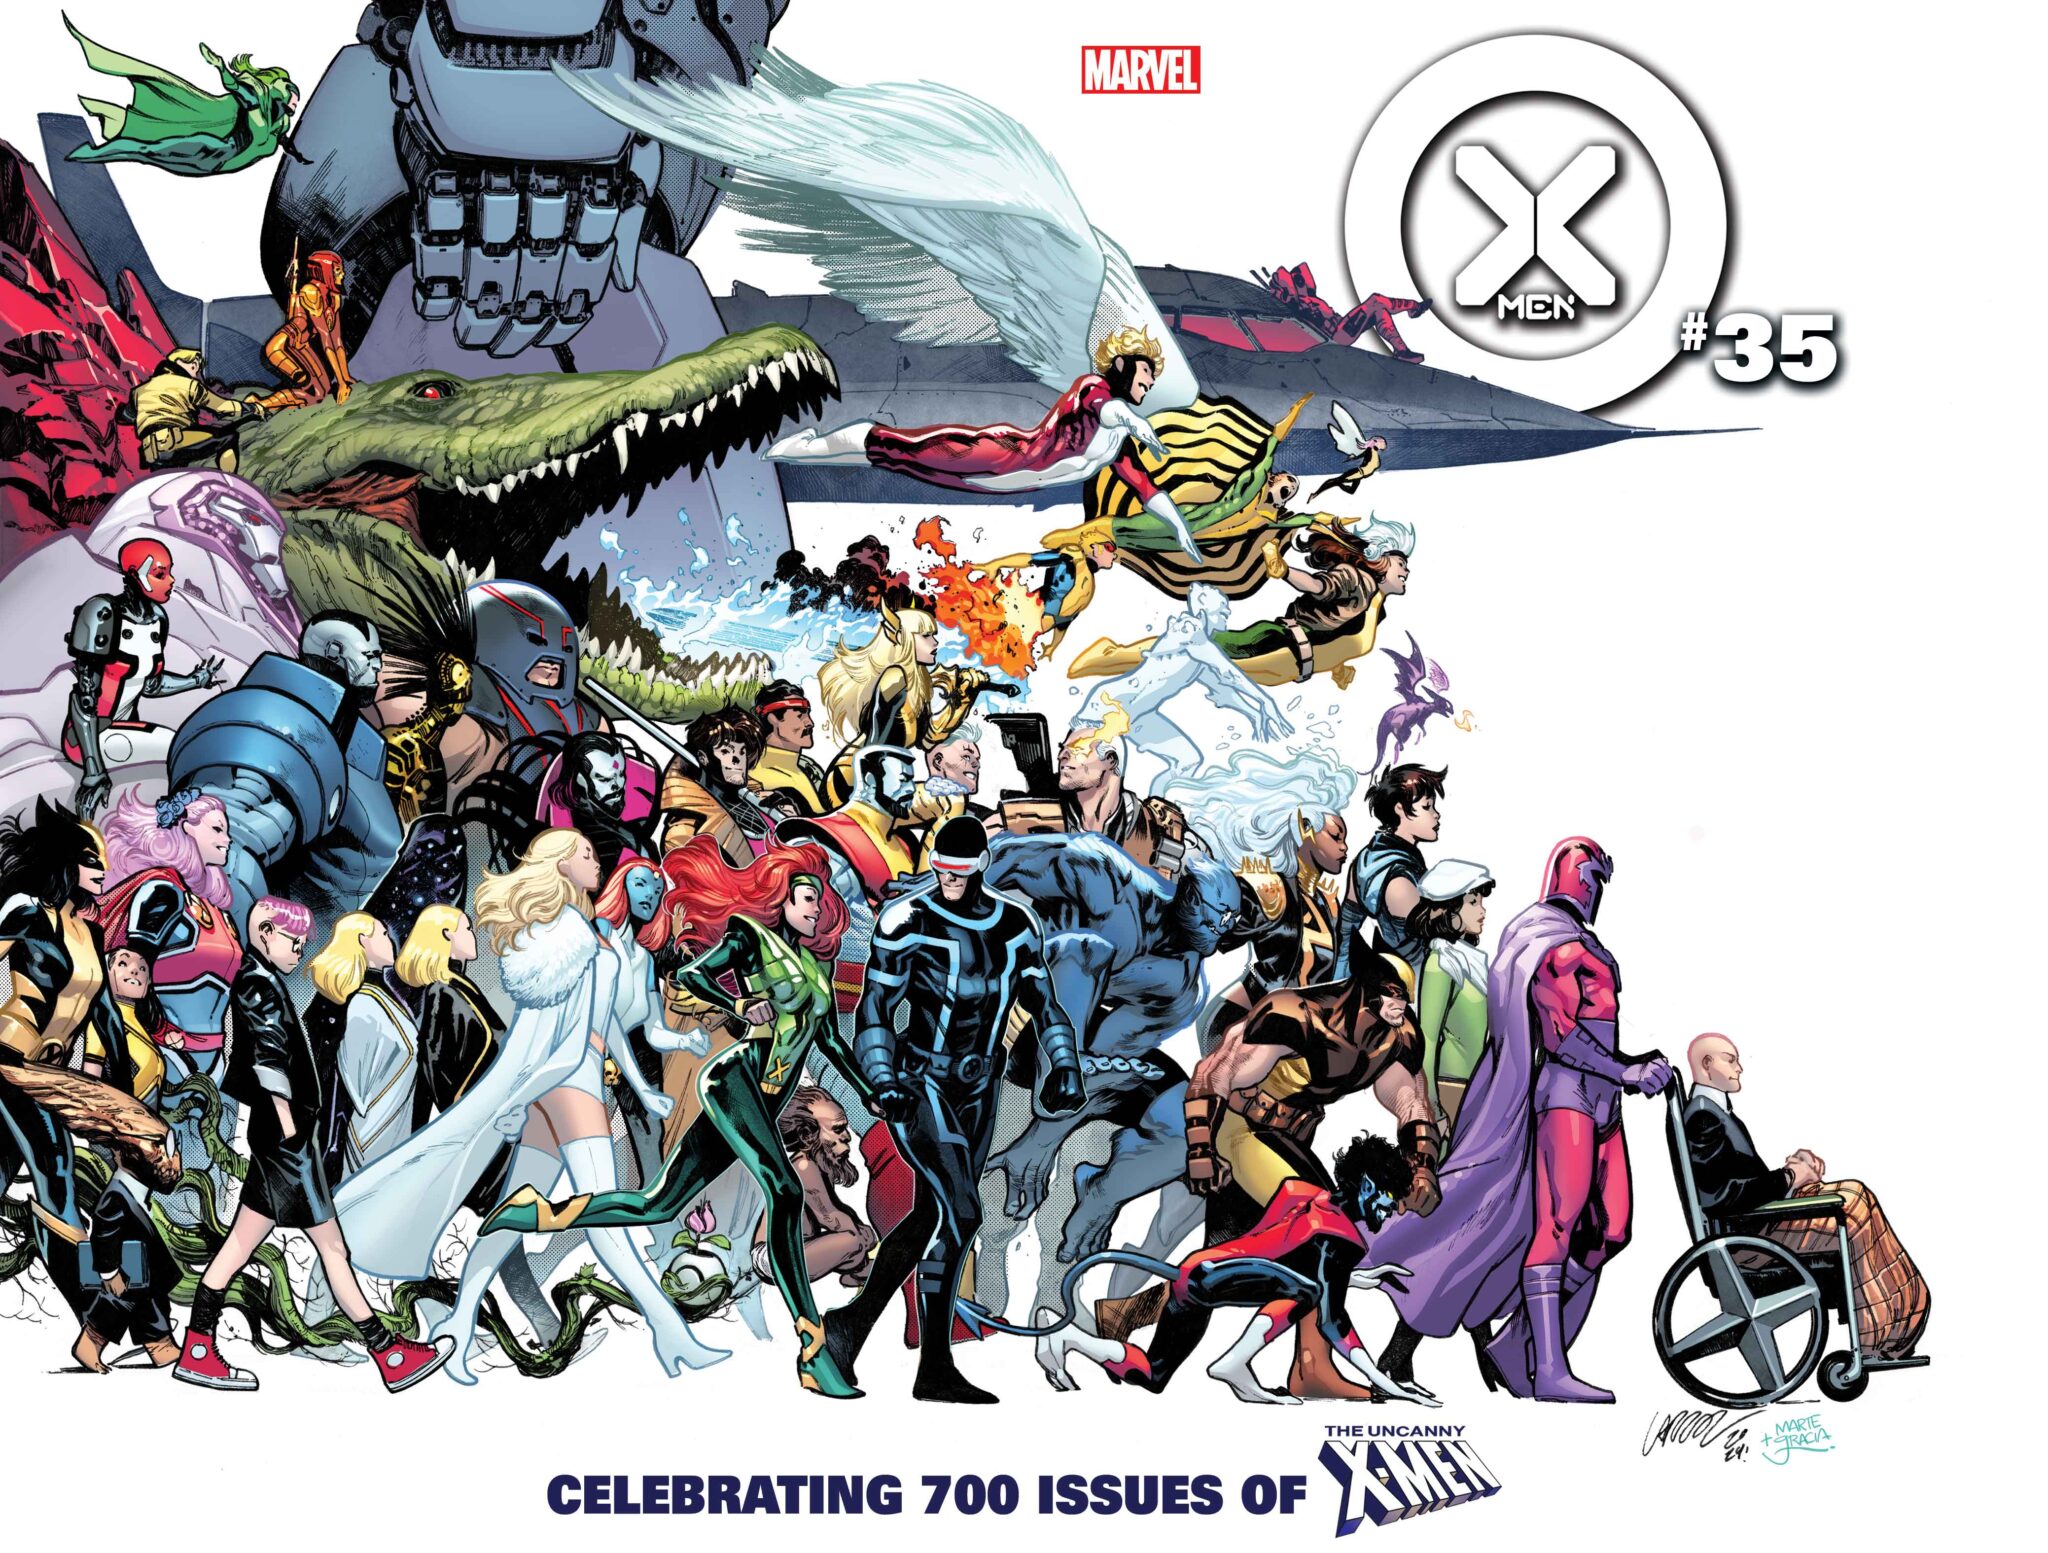 X-Men #35 wraparound cover